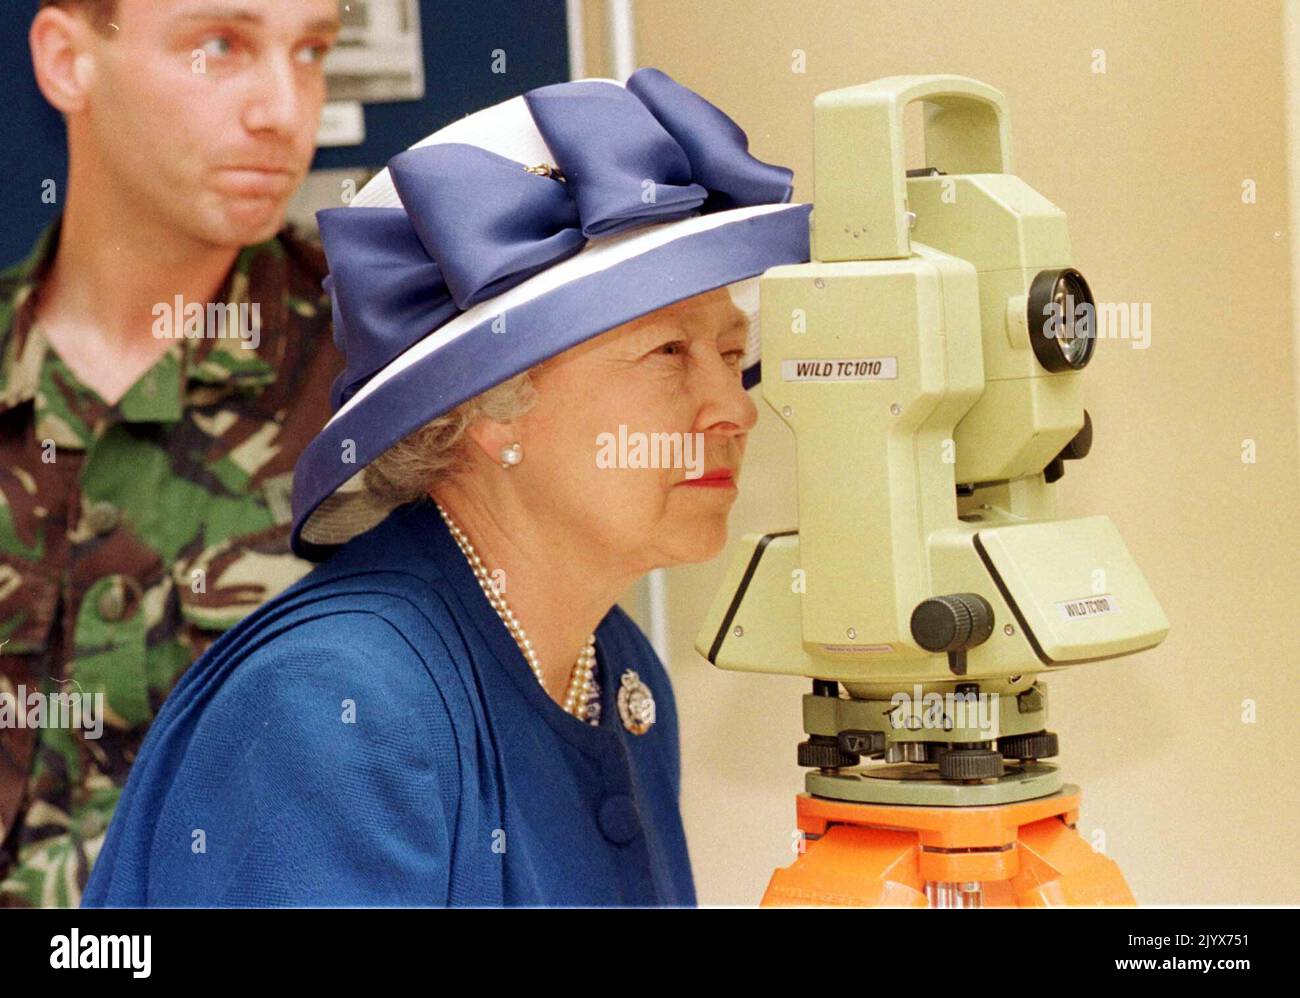 Foto de archivo de fecha 26/06/98 de la reina Isabel II, Coronel en Jefe del Cuerpo de Ingenieros Reales del Ejército Británico, mirando a través de un teodolito durante su visita al Grupo de Ingenieros de la encuesta de 42 en el Cuartel Denison en Hermitage. La reina murió pacíficamente en Balmoral esta tarde, ha anunciado el Palacio de Buckingham. Fecha de emisión: Jueves 8 de septiembre de 2022. Foto de stock